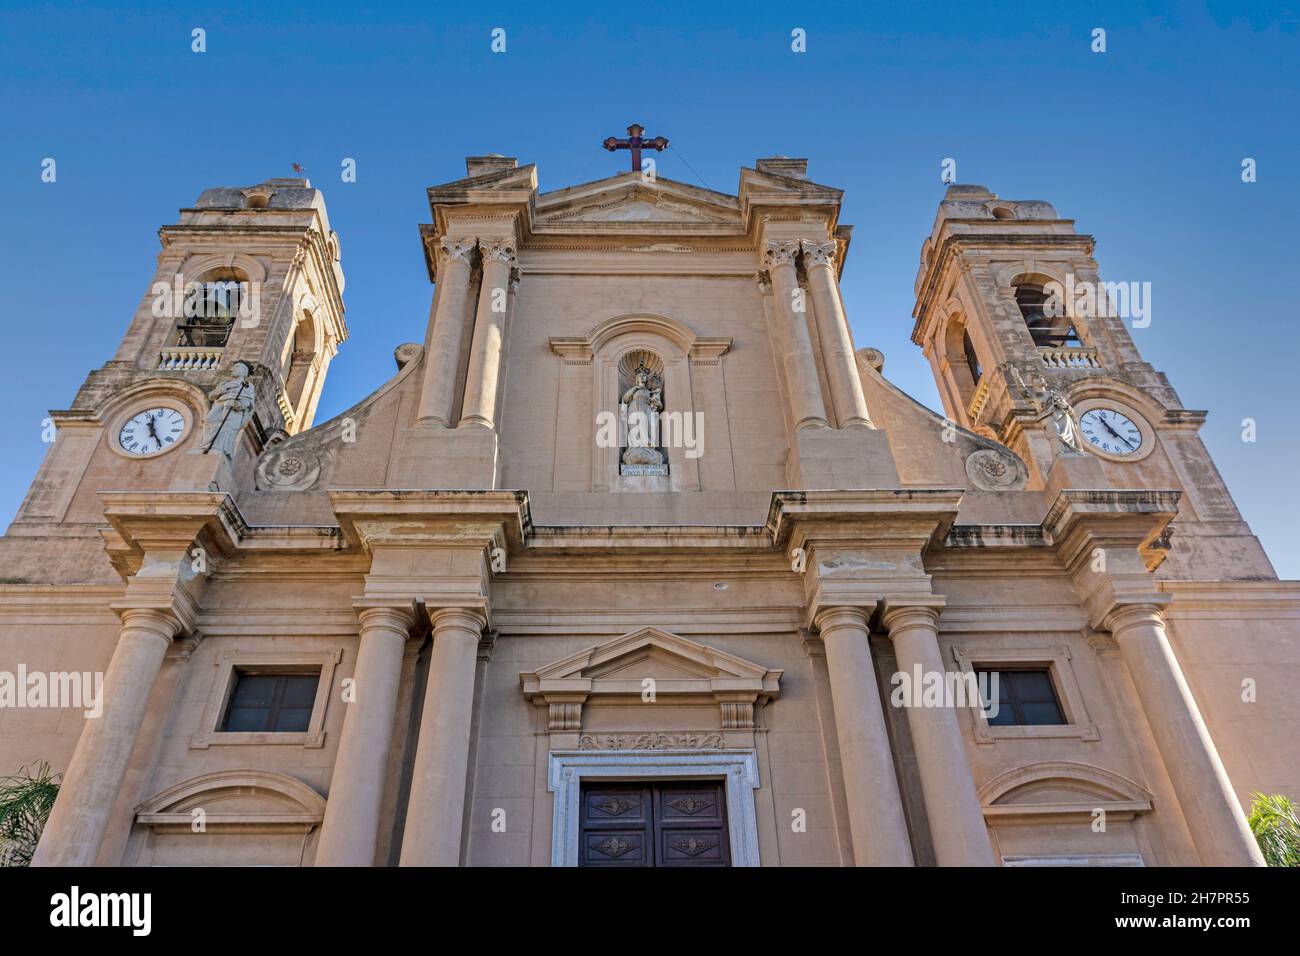 The Church of Saint Maria Santissima delle Grazie in the Piazza Duomo in Terrasini, Sicily, Italy. Stock Photo